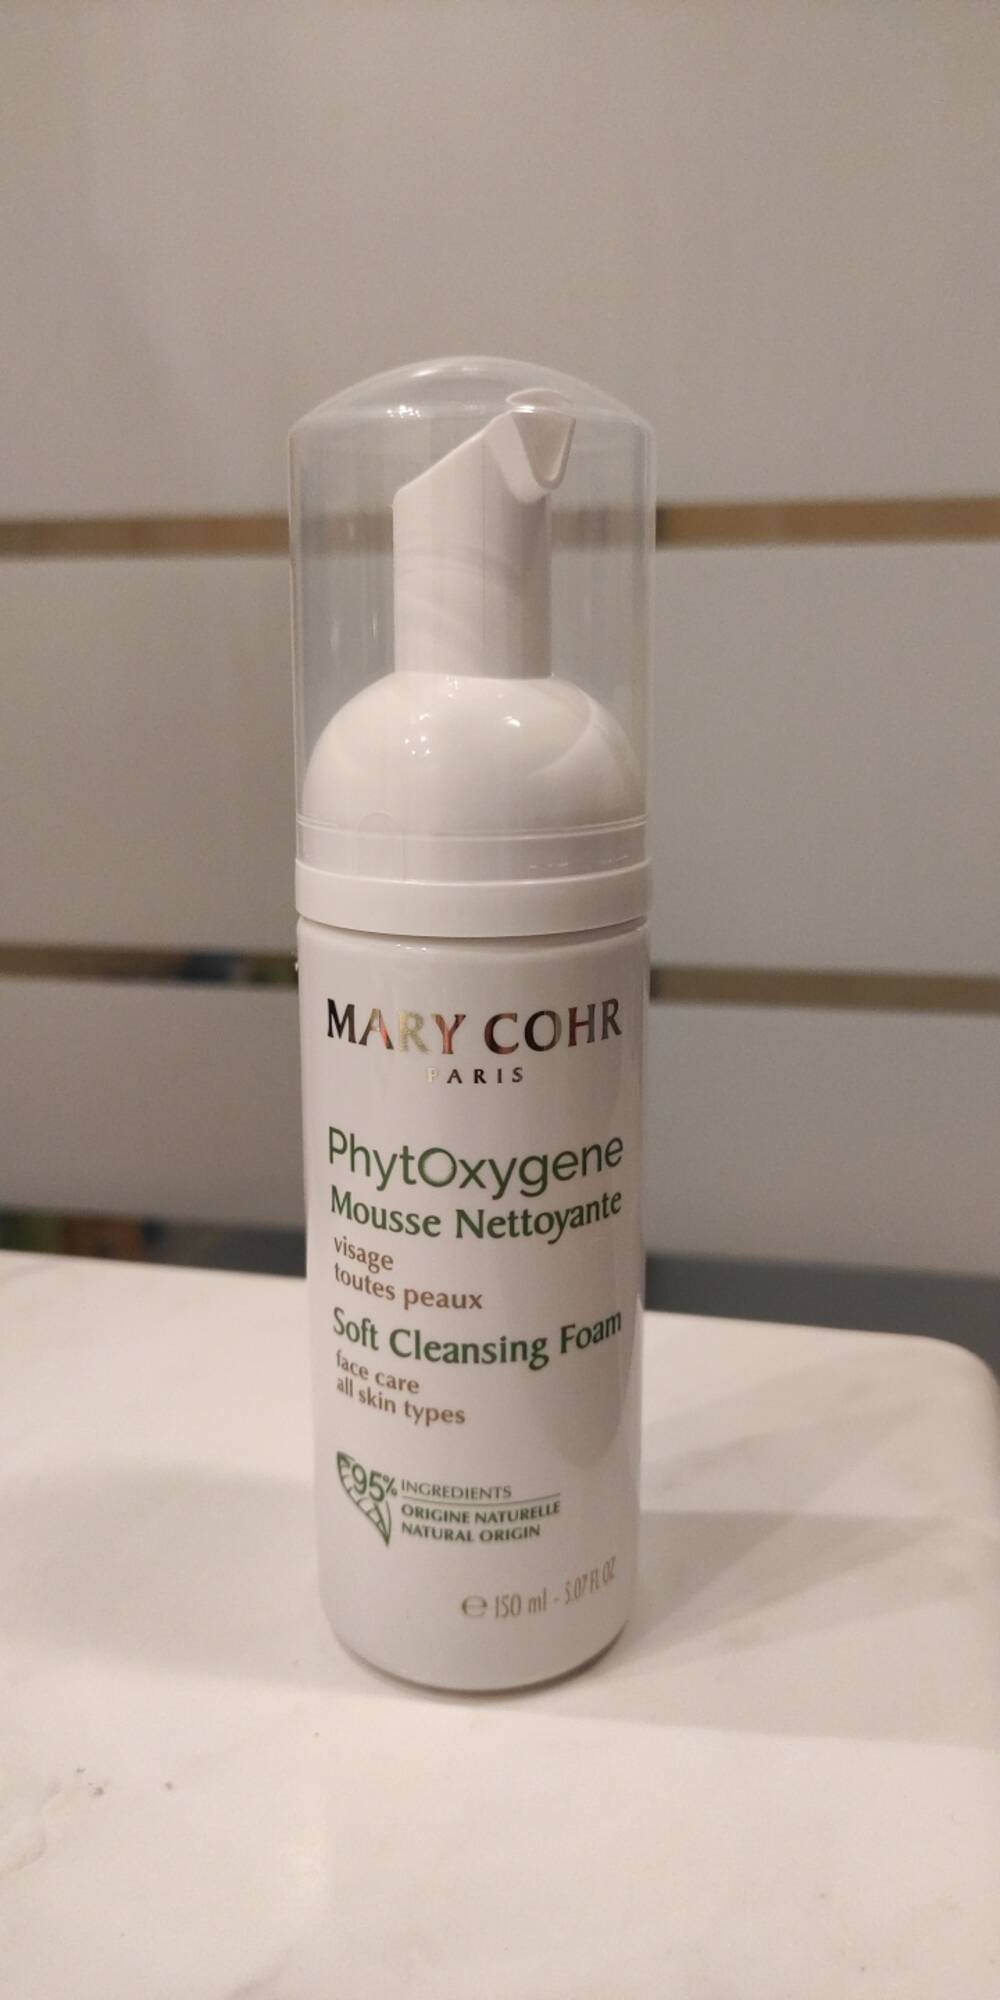 MARY COHR - Phytoxygene - Mousse nettoyante 